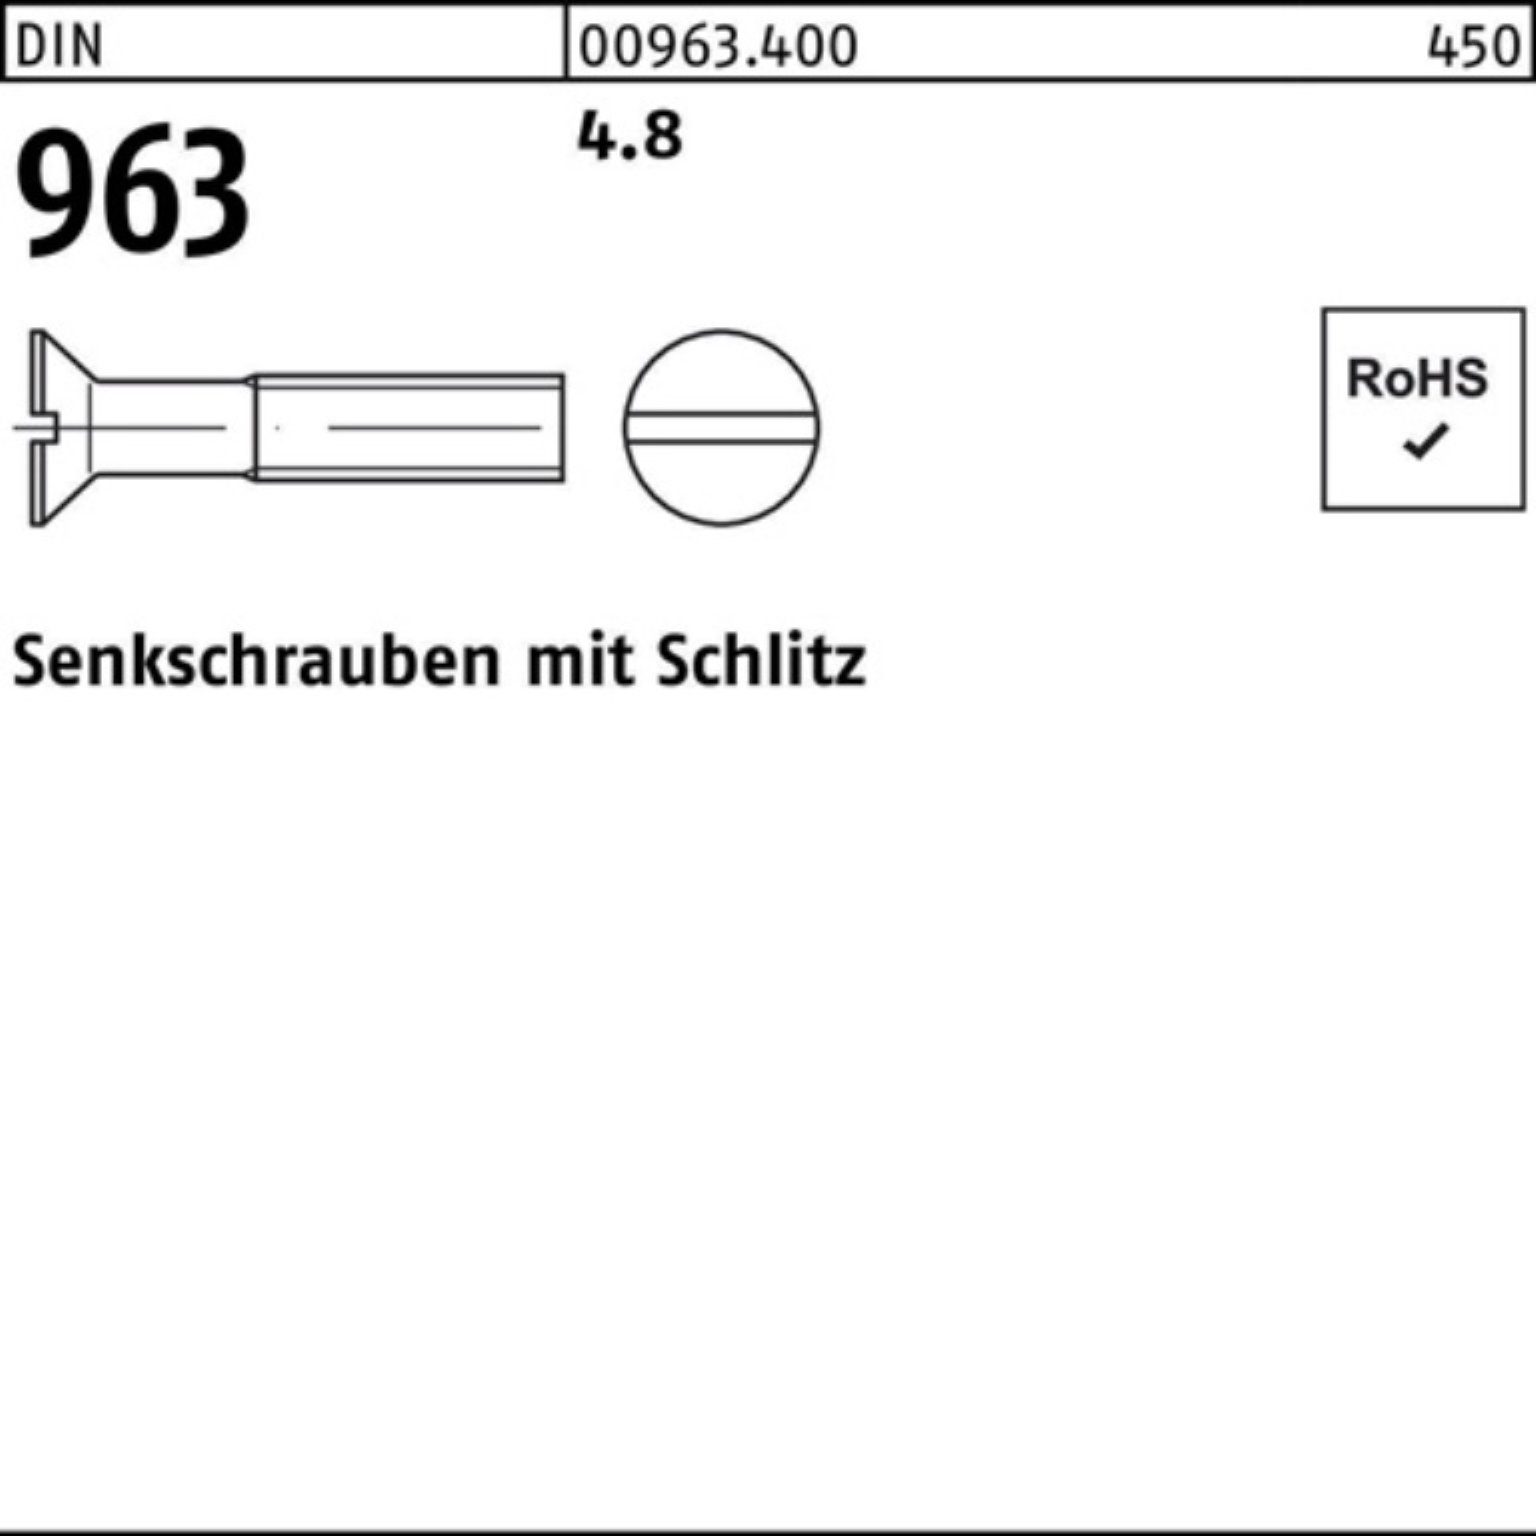 Reyher Senkschraube DIN 963 500 Pack M6x DIN 500er 4.8 963 Stück Schlitz Senkschraube 40